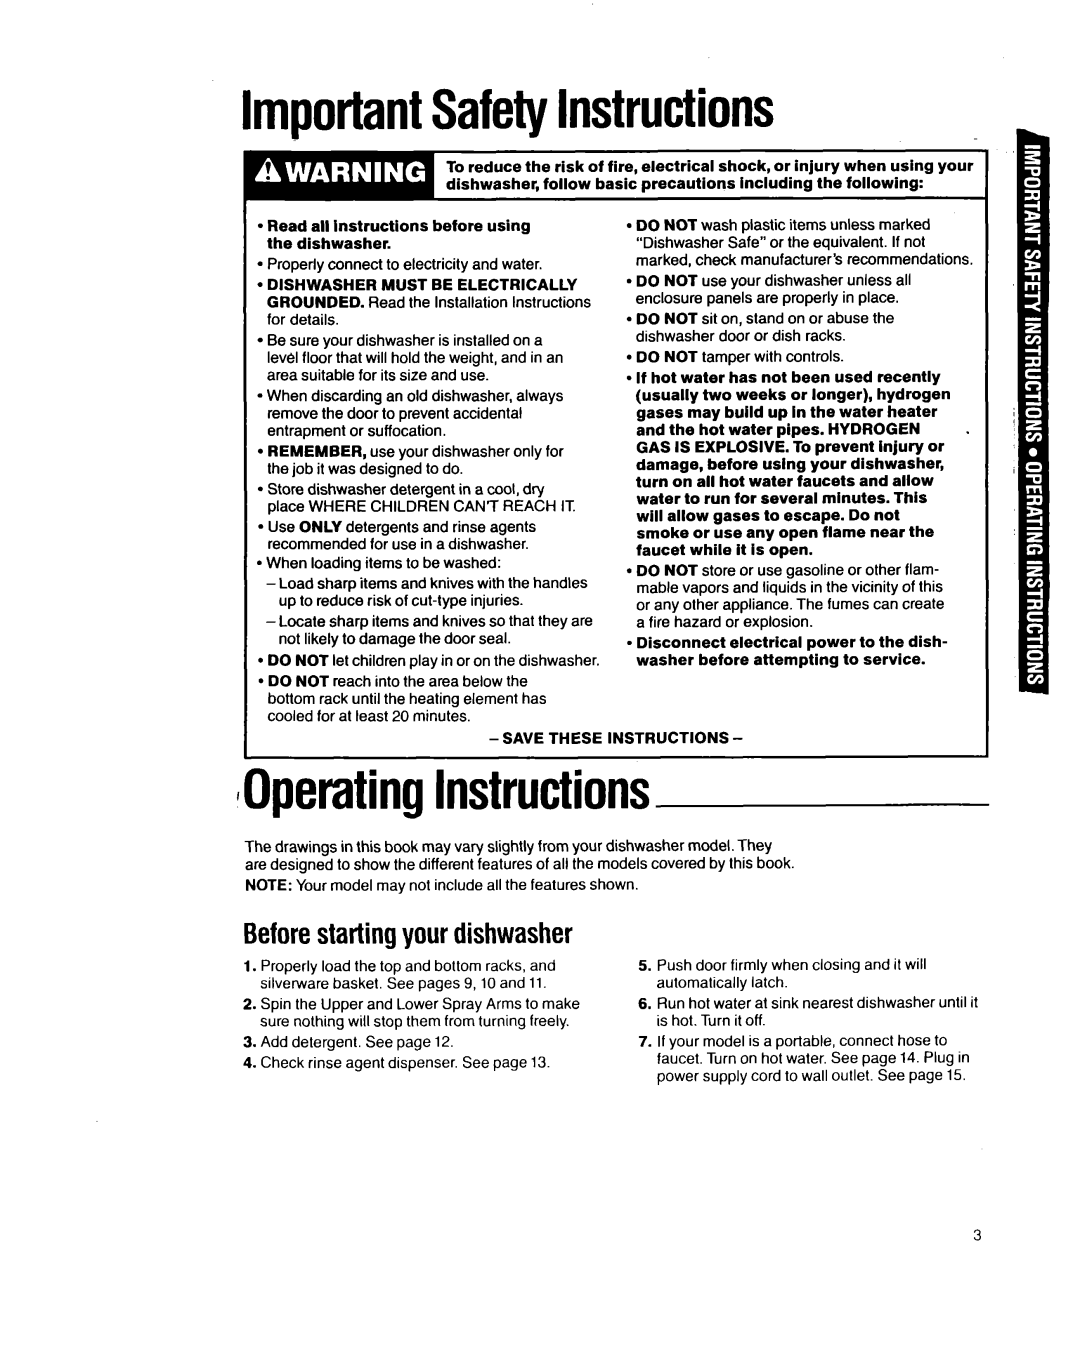 Whirlpool 8700 manual ImportantSafetyInstructions, OperatingInstructions, Beforestarting your dishwasher 